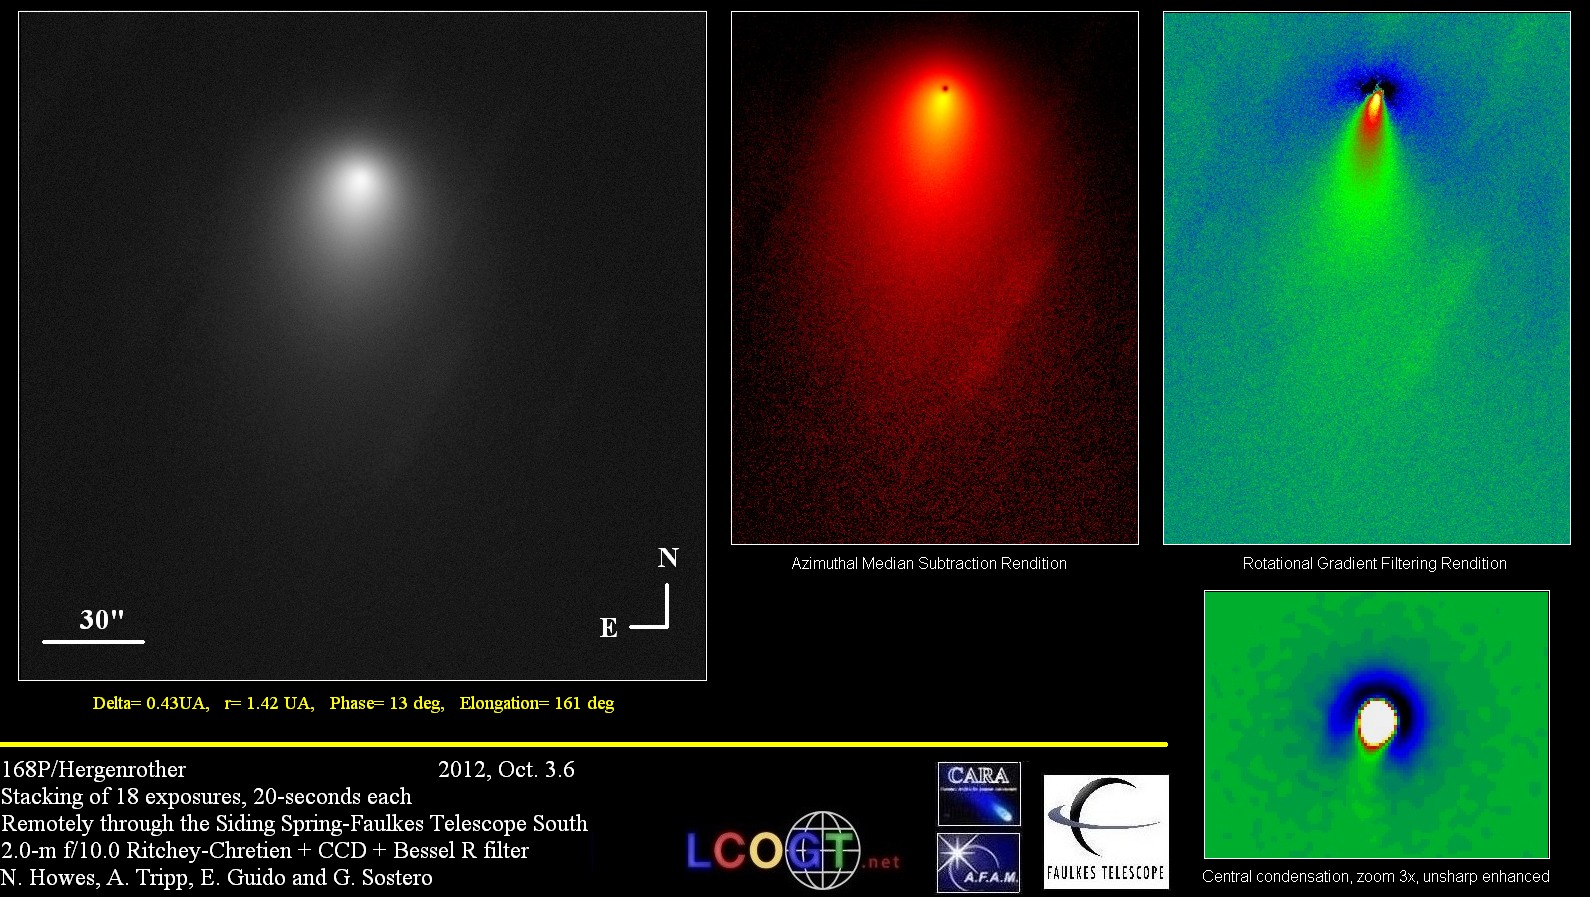 Comet 168/Hergenrother